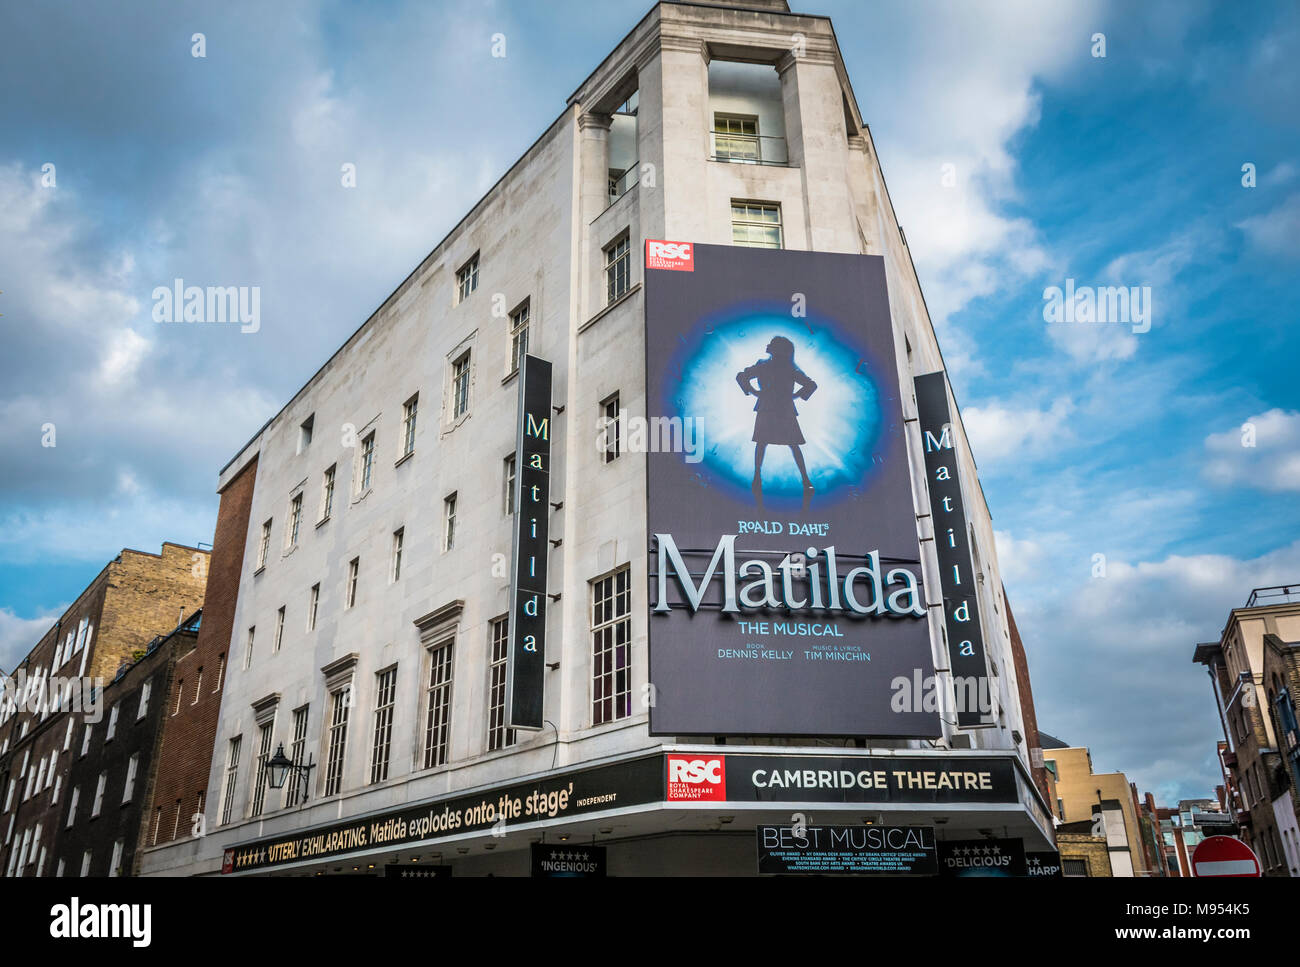 Der Roald Dahl Matilda, das Musical, im Cambridge Theatre am Earlham Street, im Londoner West End, Großbritannien Stockfoto